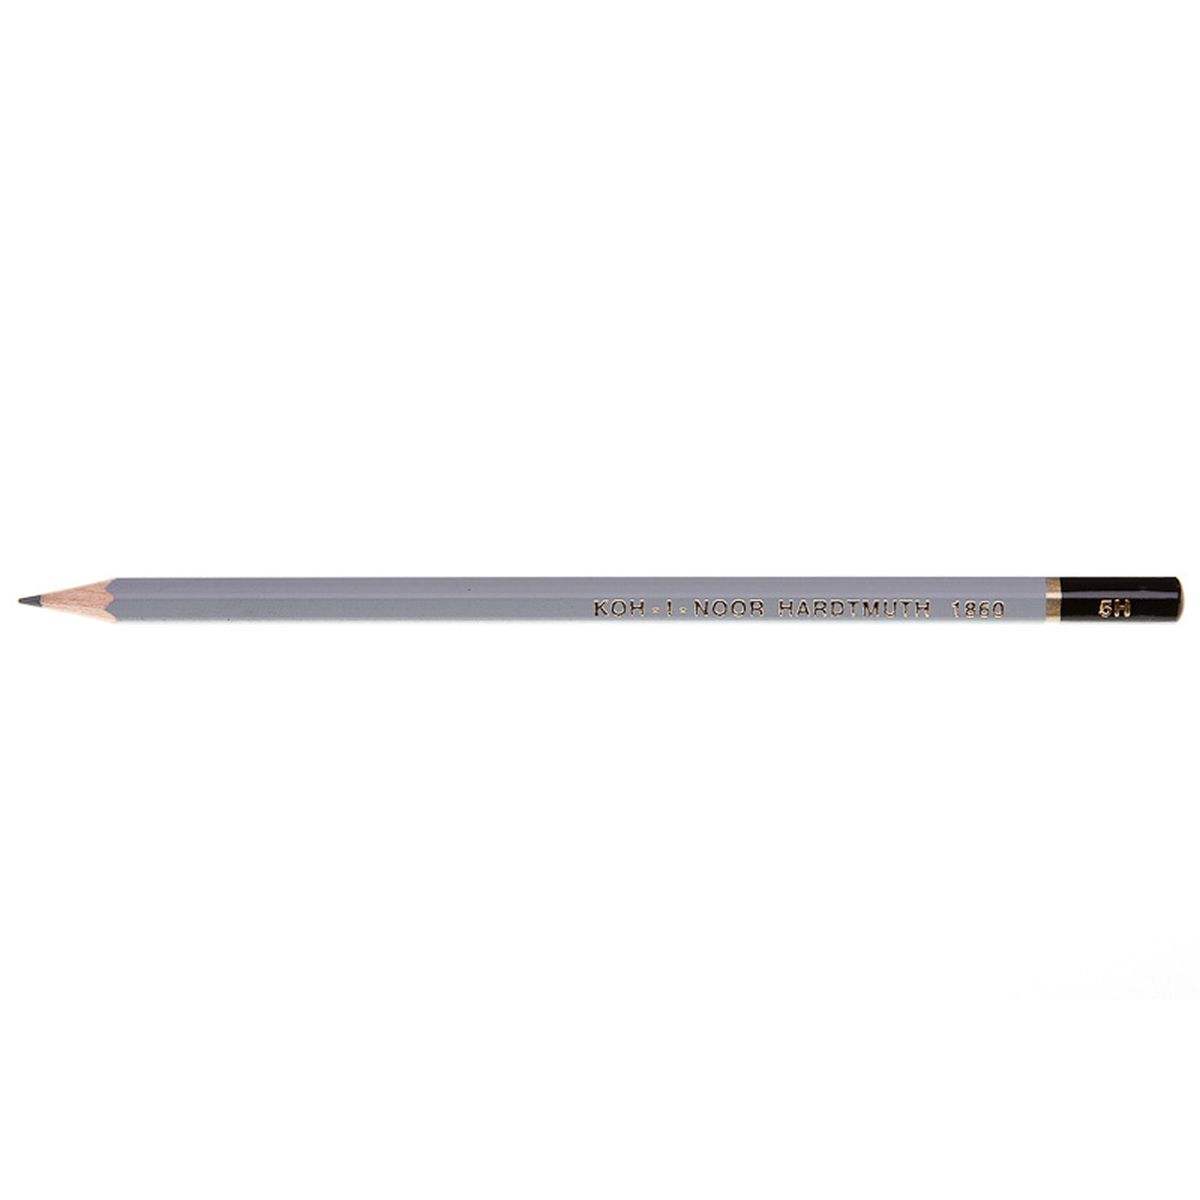 Ołówek techniczny Koh-I-Noor 5H 12 sztuk (1860)